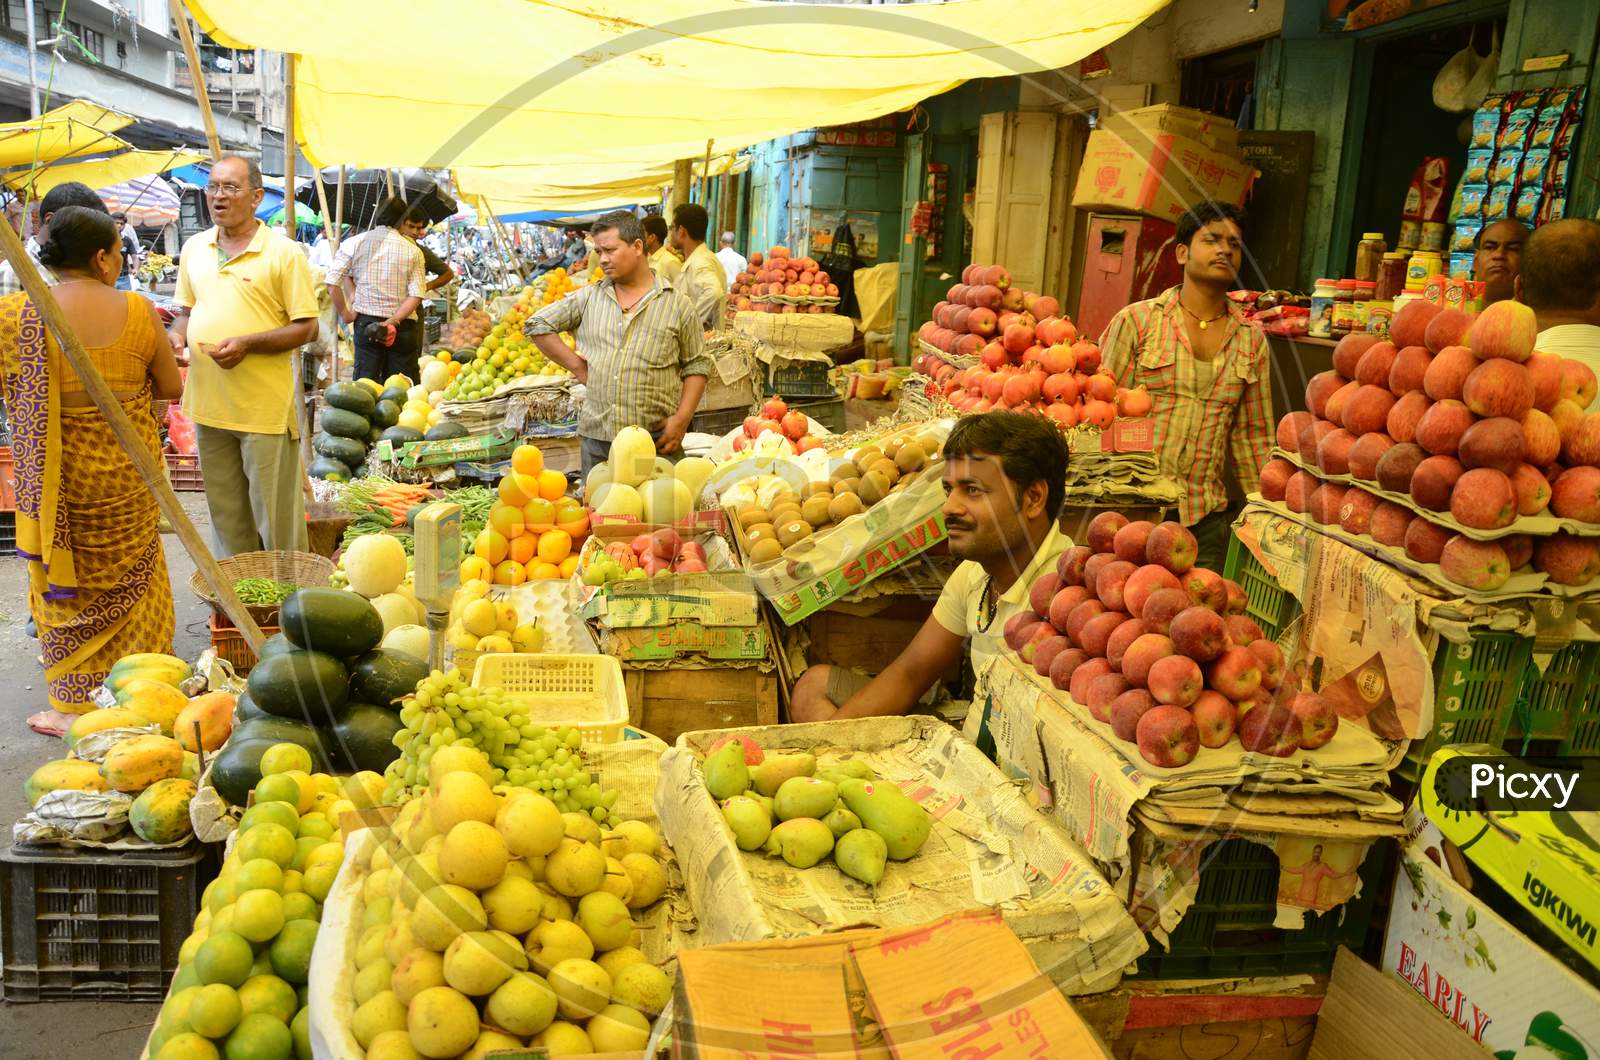 People in Guwahati Fruit Market, Assam